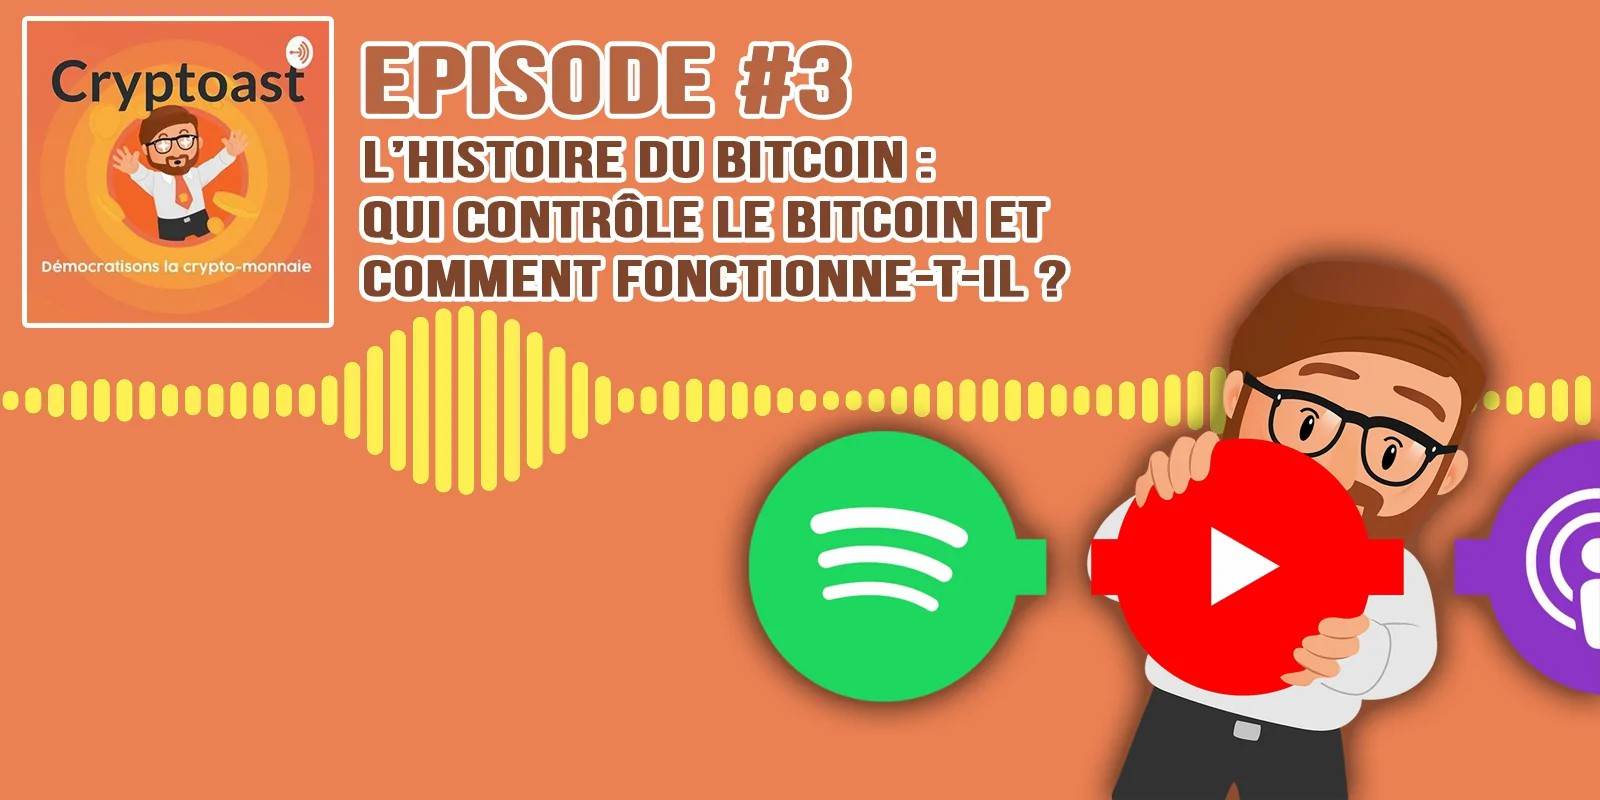 Podcast #3 - Qui contrôle le Bitcoin et comment fonctionne-t-il ?